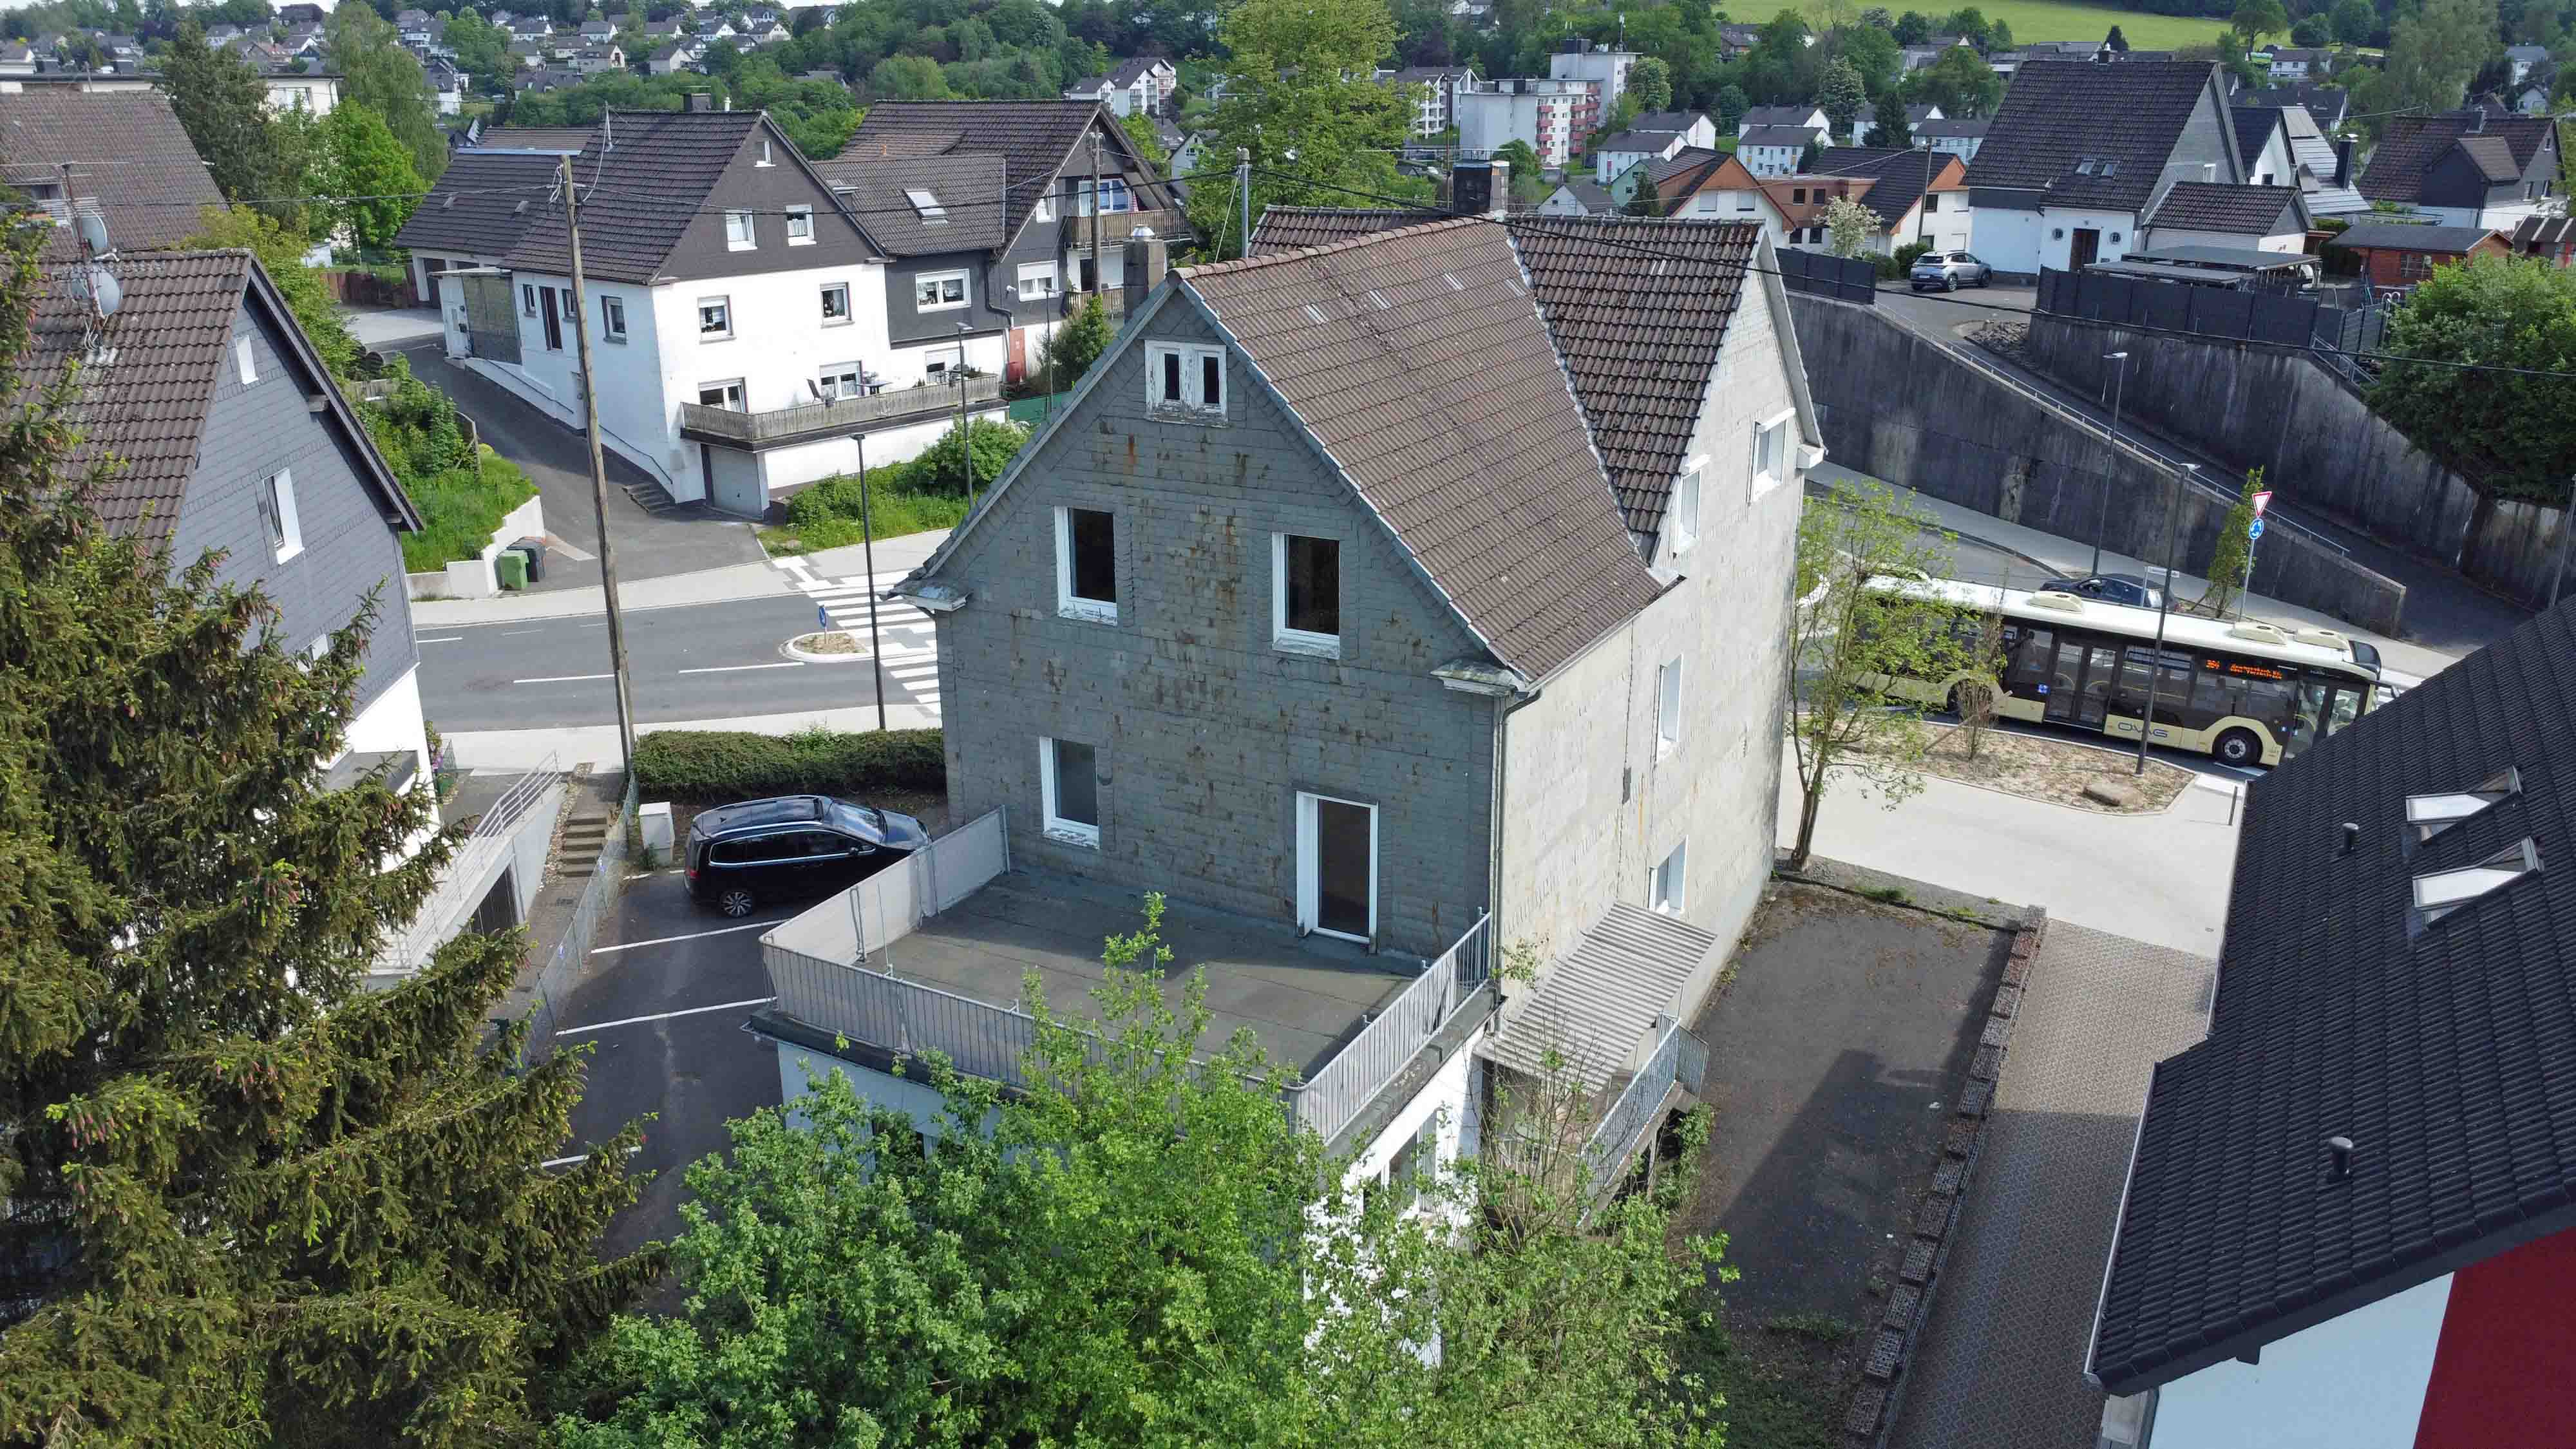 Gummersbach: Präsent am Stadtkern gelegen, Parkplätze links und rechts vom Haus